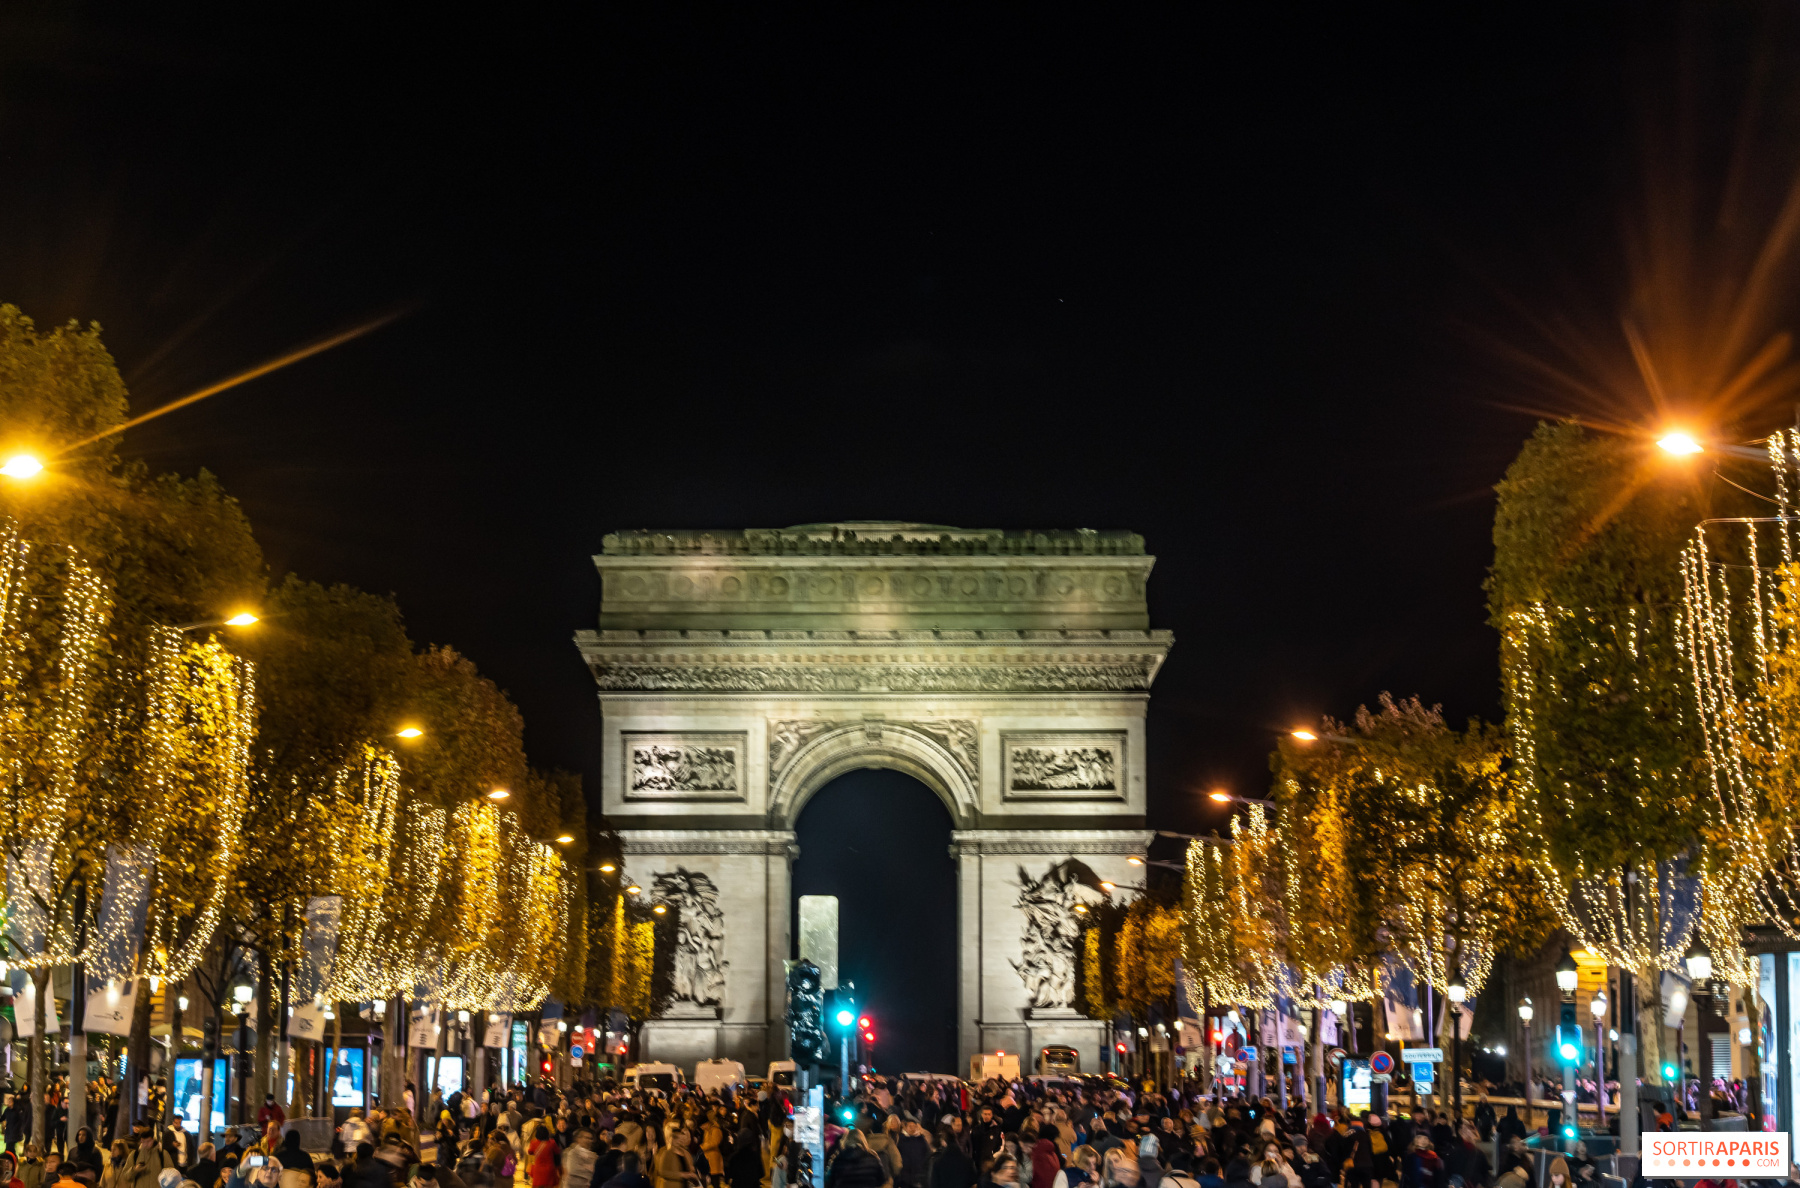 Tour de France 2022s finish on the Champs-Elysées in Paris